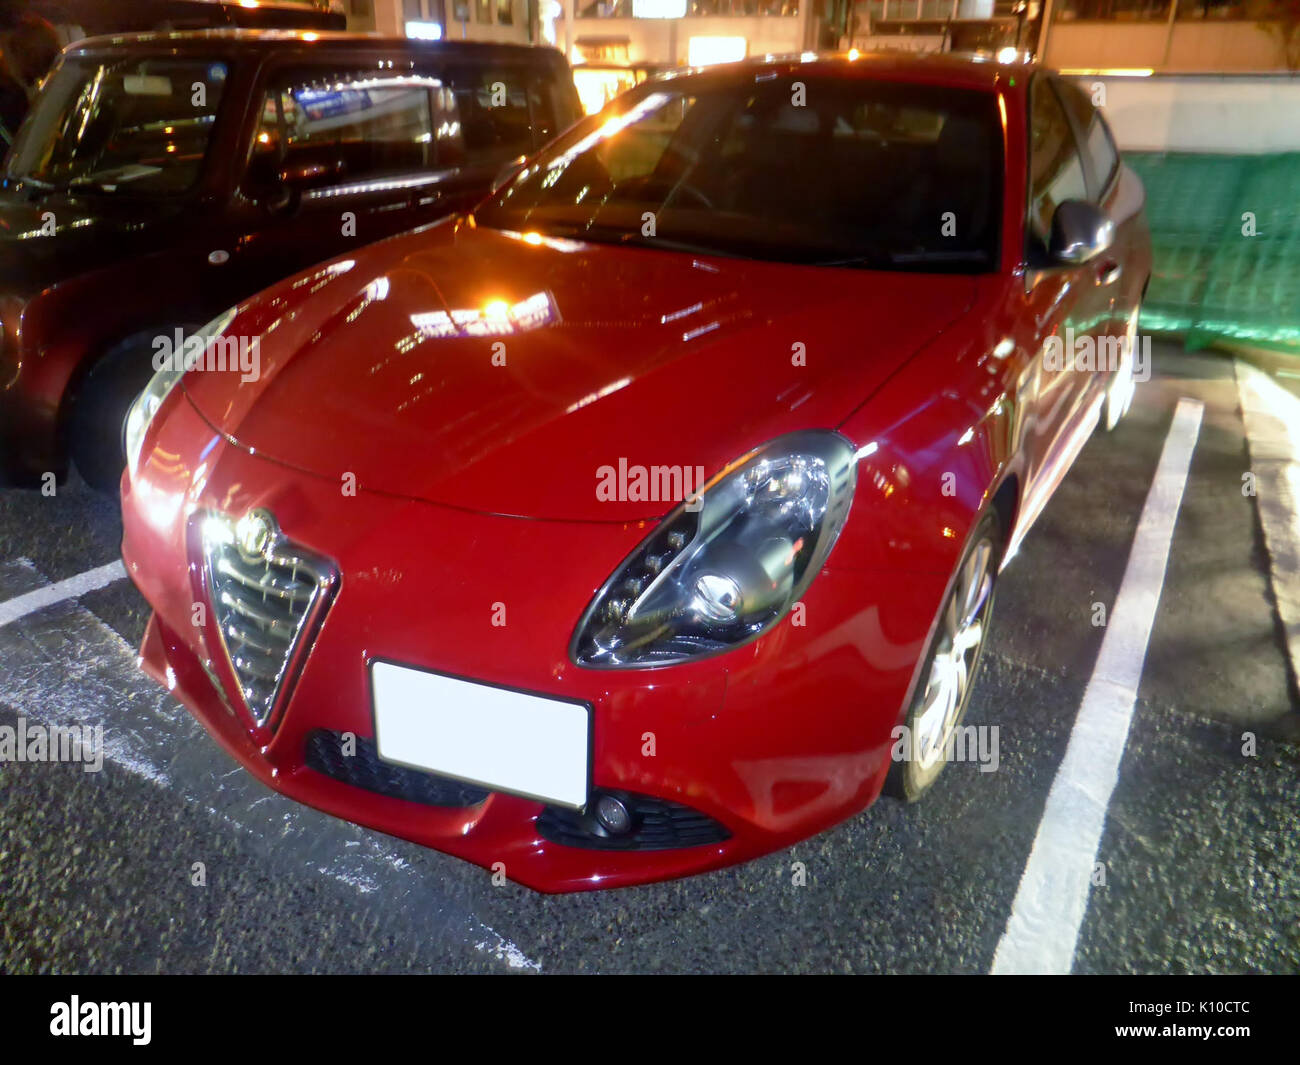 Alfa Romeo Giulietta III Sprint at night front Stock Photo